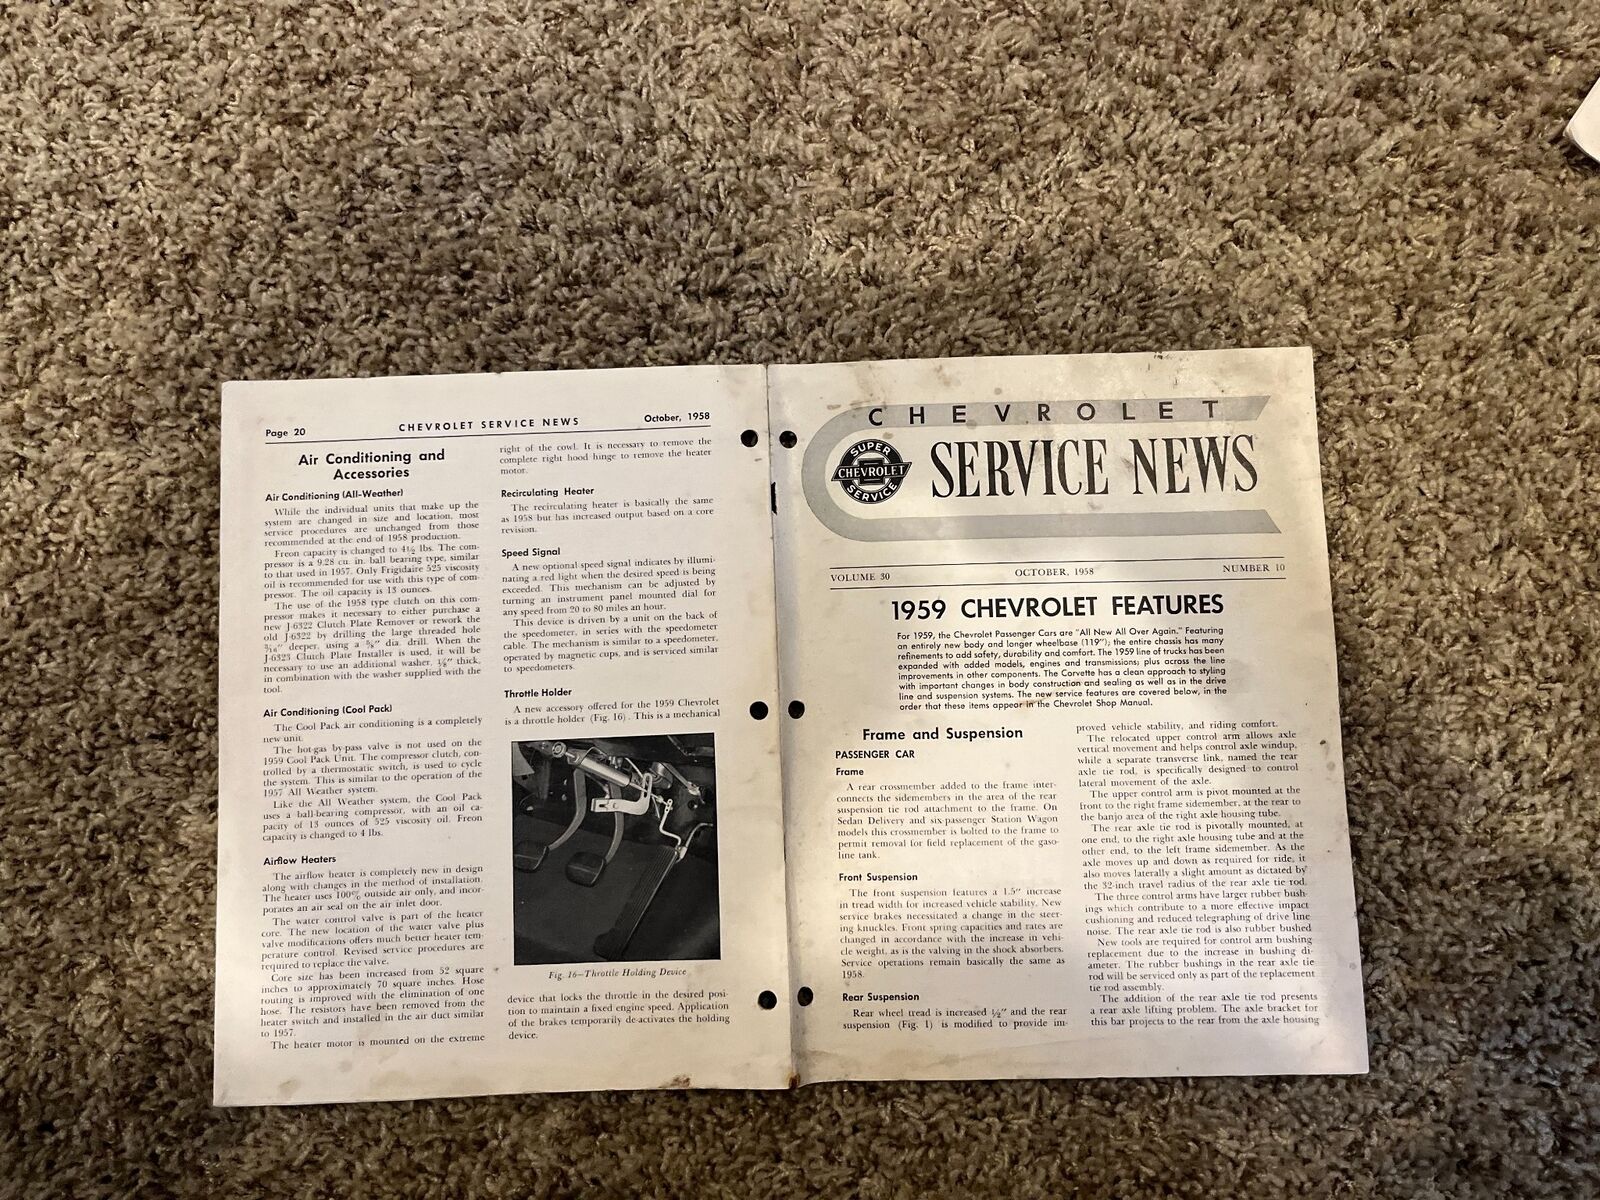 VOLUME 30 NUMBER 10 OCTOBER 1958 CHEVROLET SERVICE NEWS 